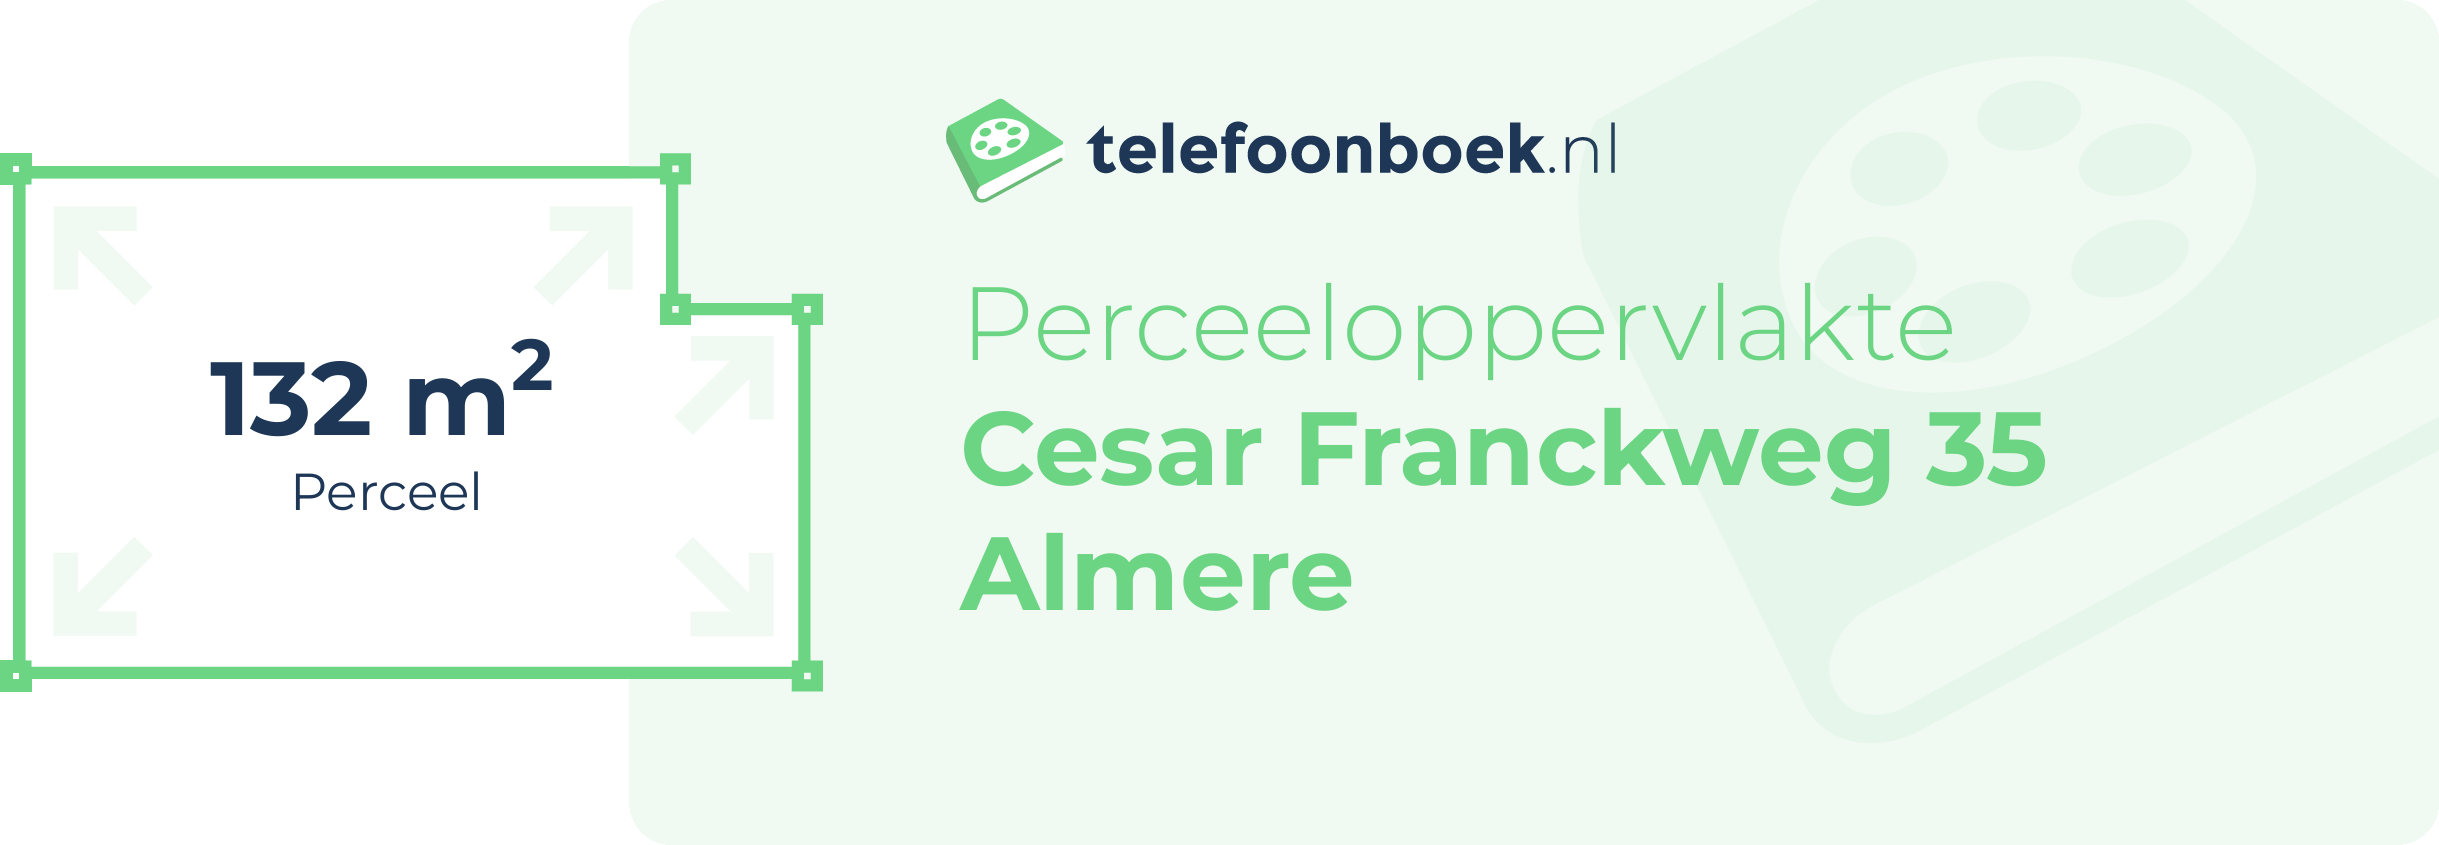 Perceeloppervlakte Cesar Franckweg 35 Almere